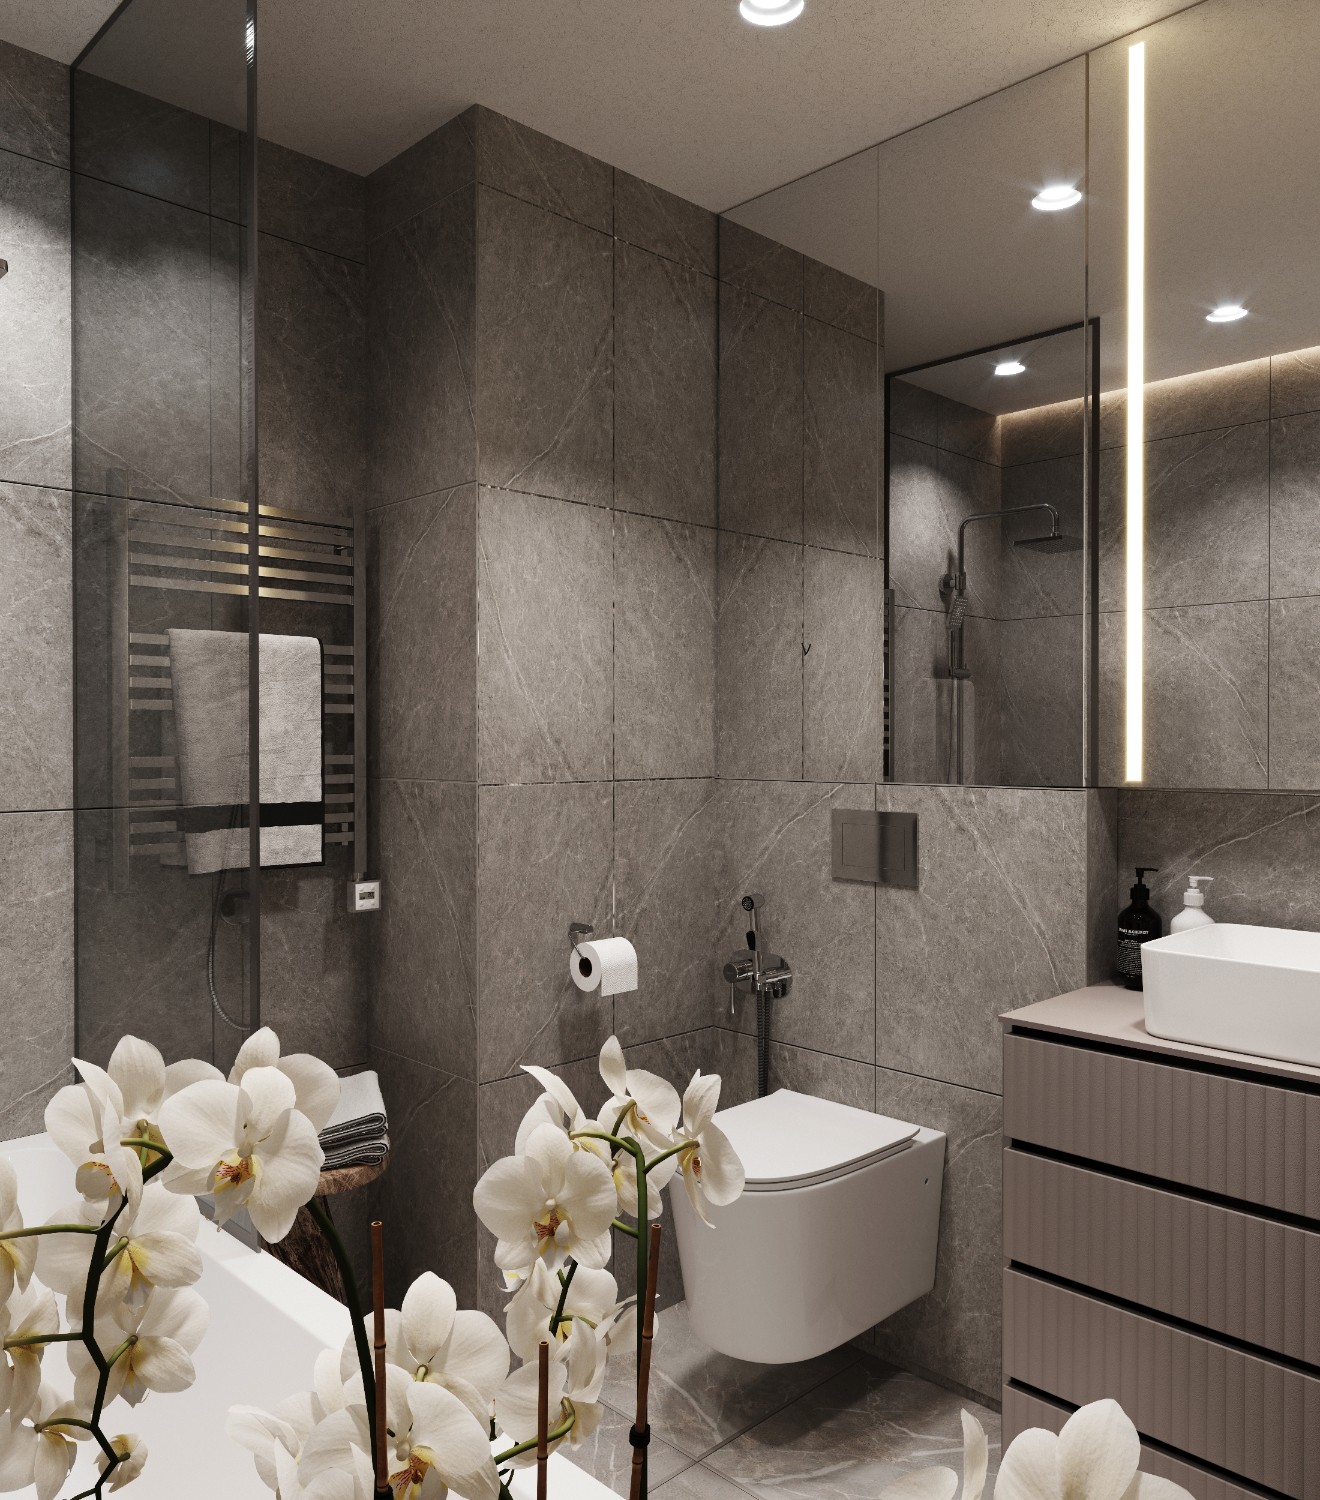 Дизайнеры испанской компании Alaplana черпали вдохновение в естественной красоте Амальфи и создали коллекцию Alaplana Amalfi. Для интерьера ванной комнаты мы выбрали насыщенный оттенок серого. 